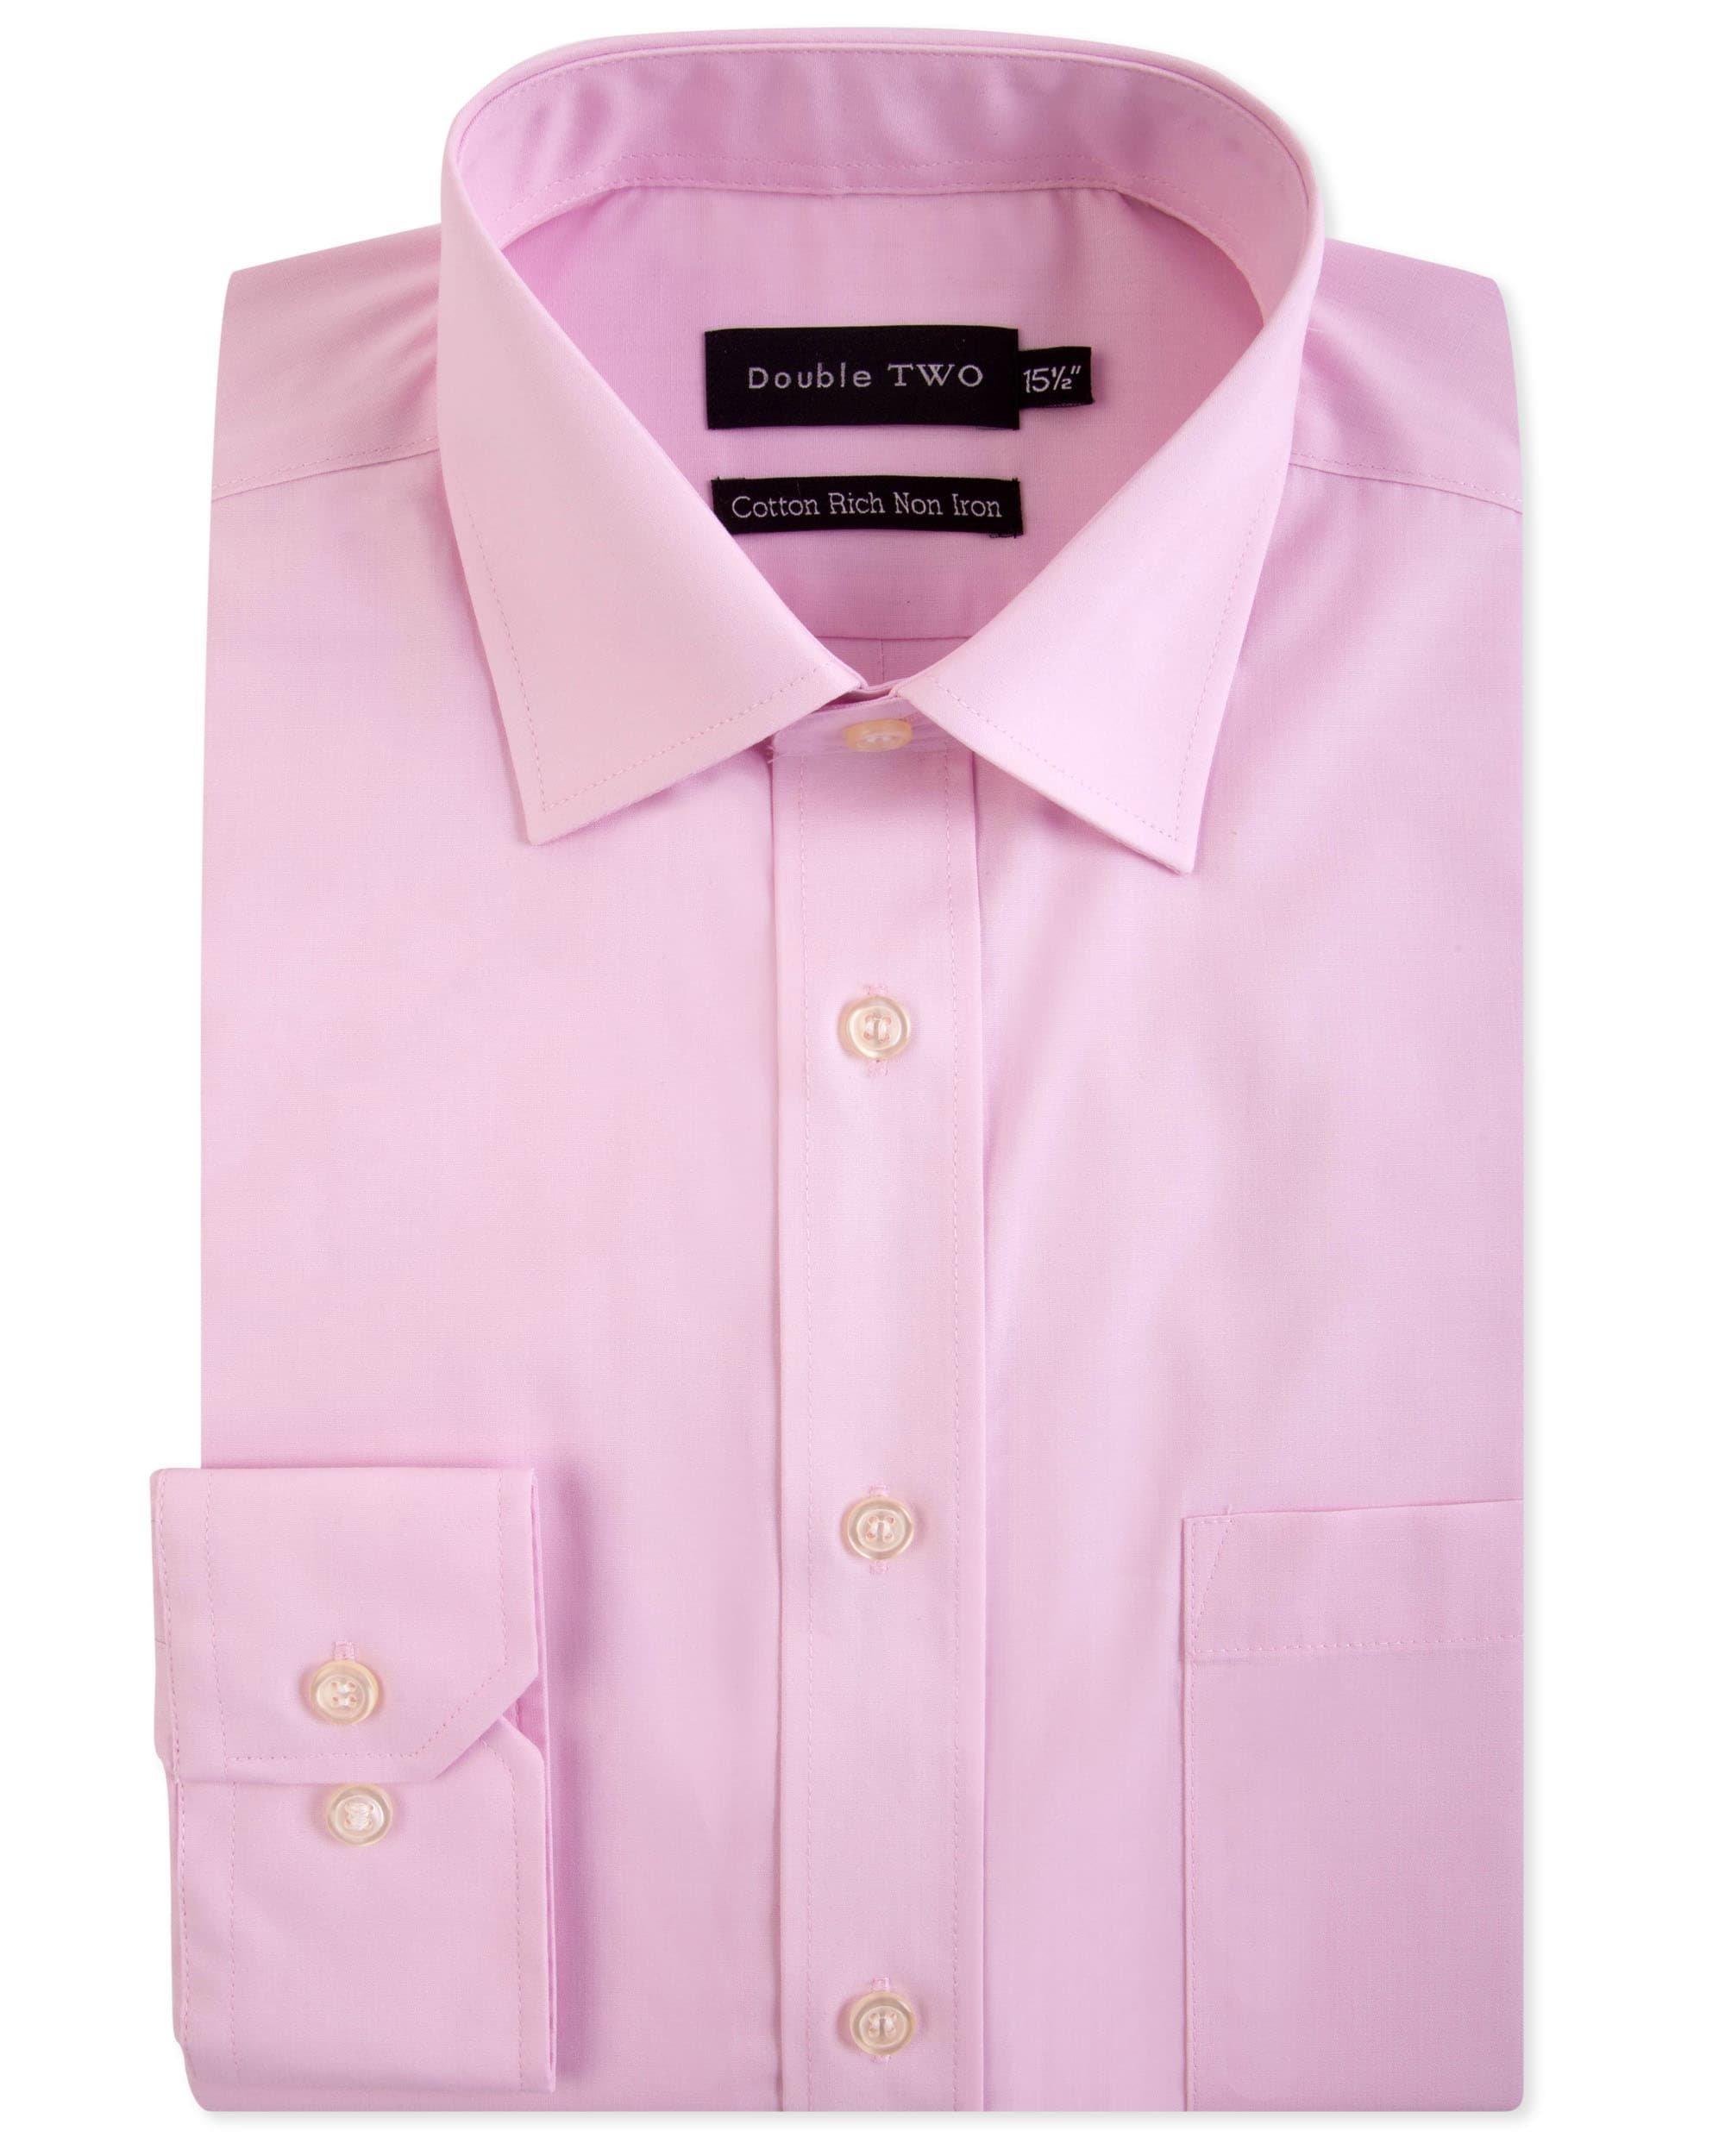 Новая розовая рубашка с длинным рукавом без глажки Double TWO, розовый рубашка прямого покроя с длинными рукавами xs белый